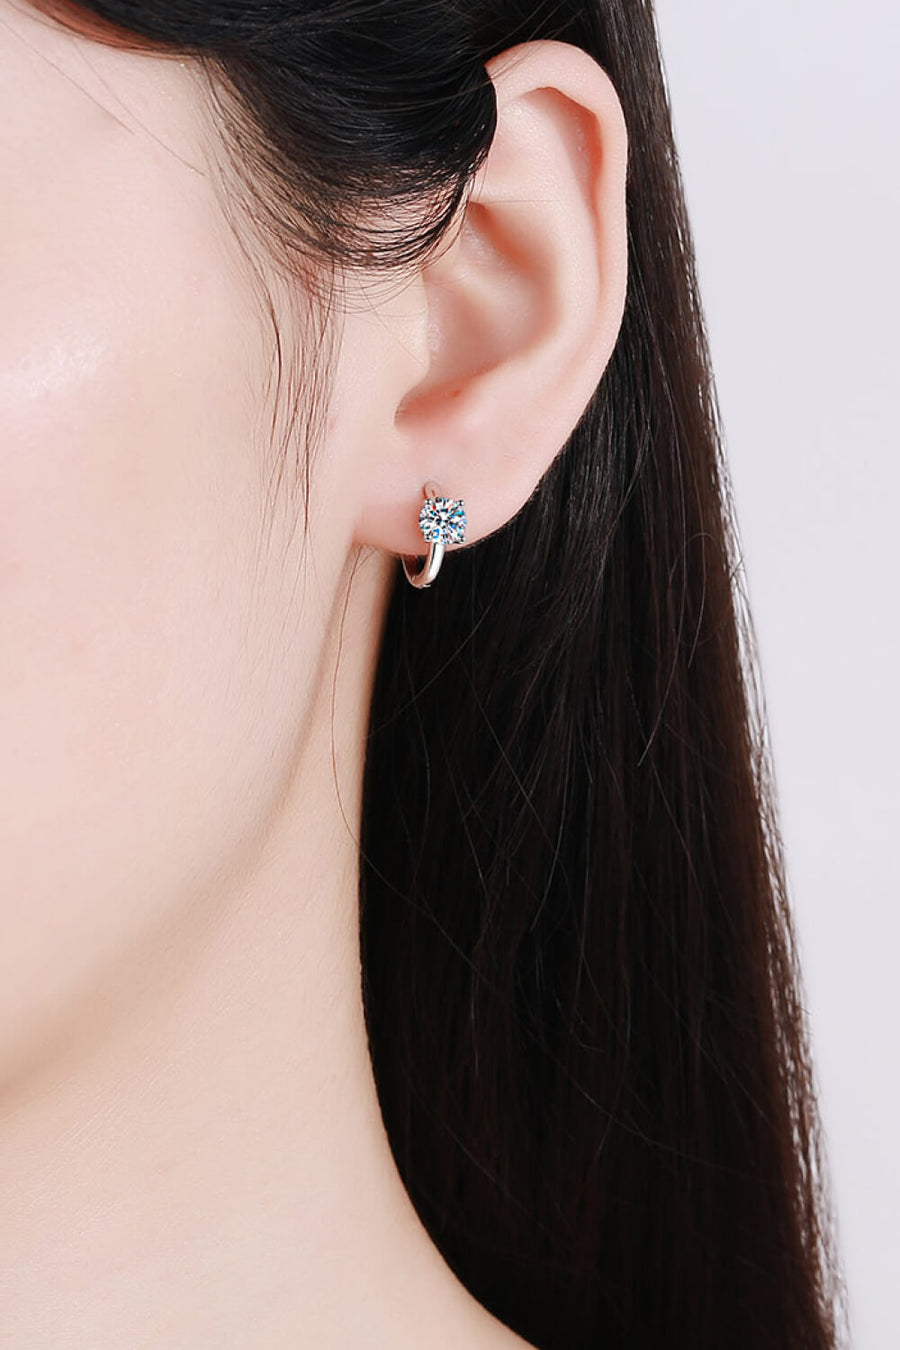 Best Diamond Earrings Jewelry Gifts for Women | 1 Carat Diamond Huggie Earrings | MASON New York